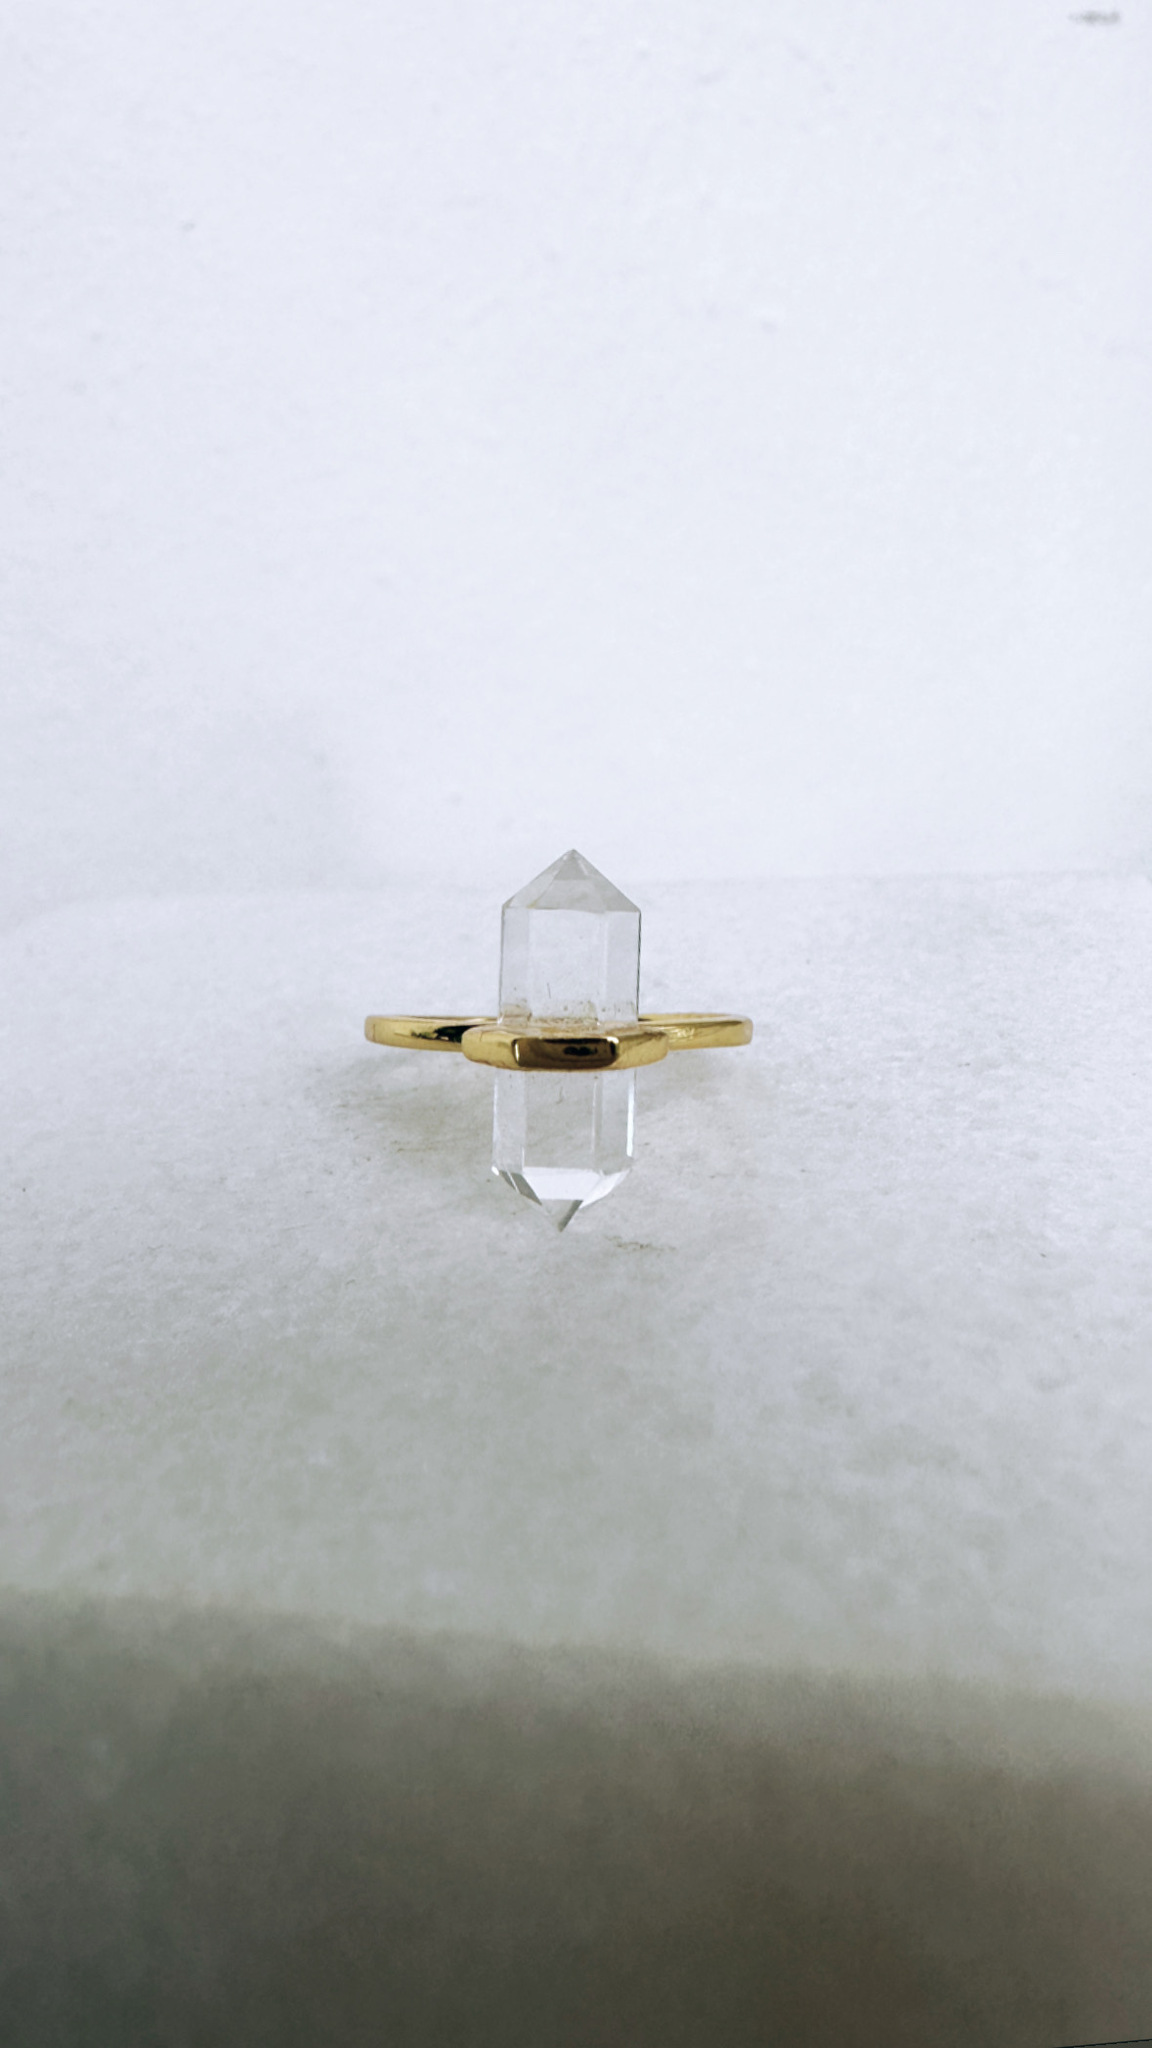 Bergkristall, ring från Biverståhl Crystals